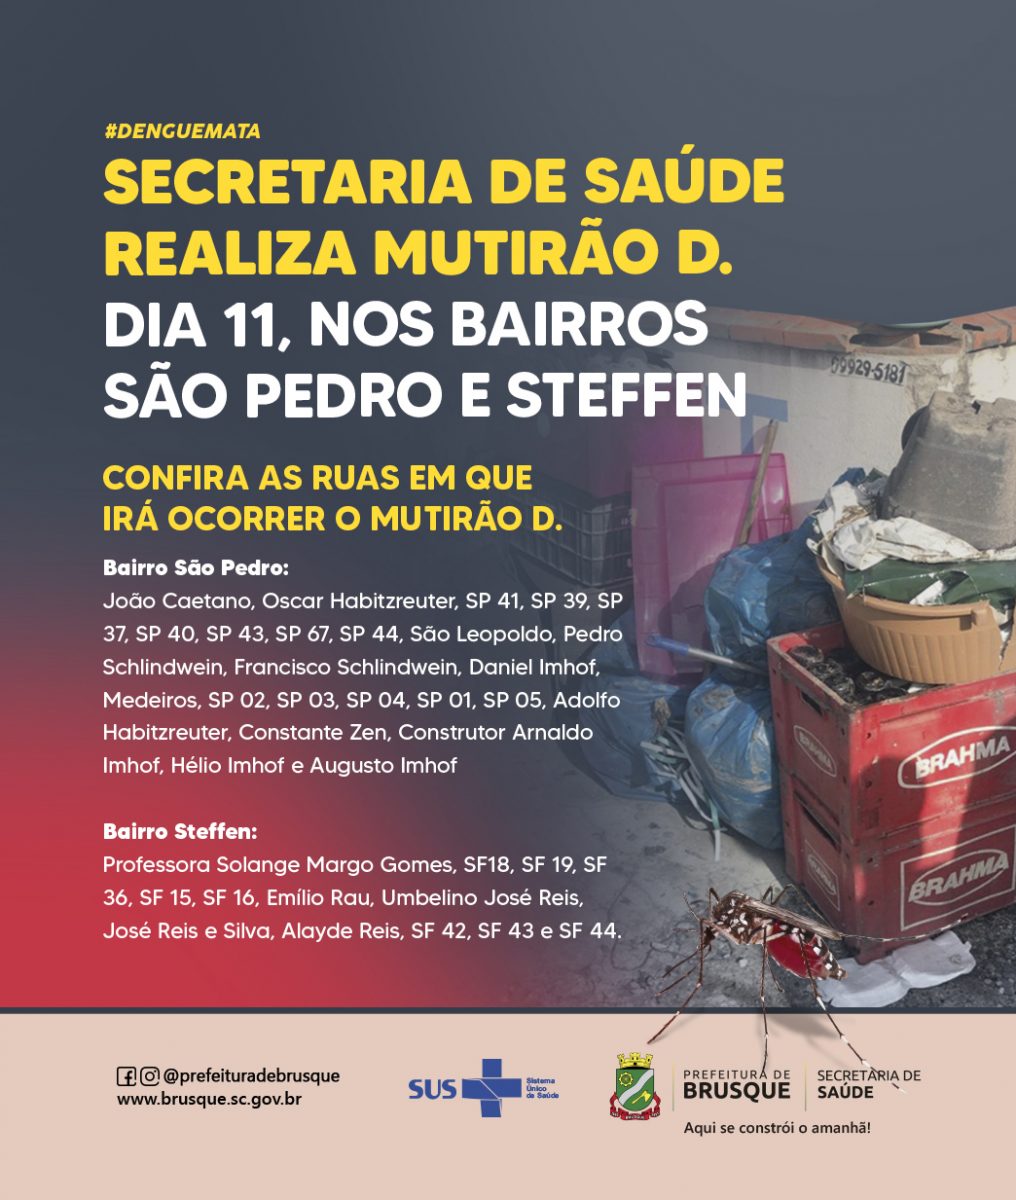 Dengue: Secretaria de Saúde realiza Mutirão D. nos bairros São Pedro e Steffen